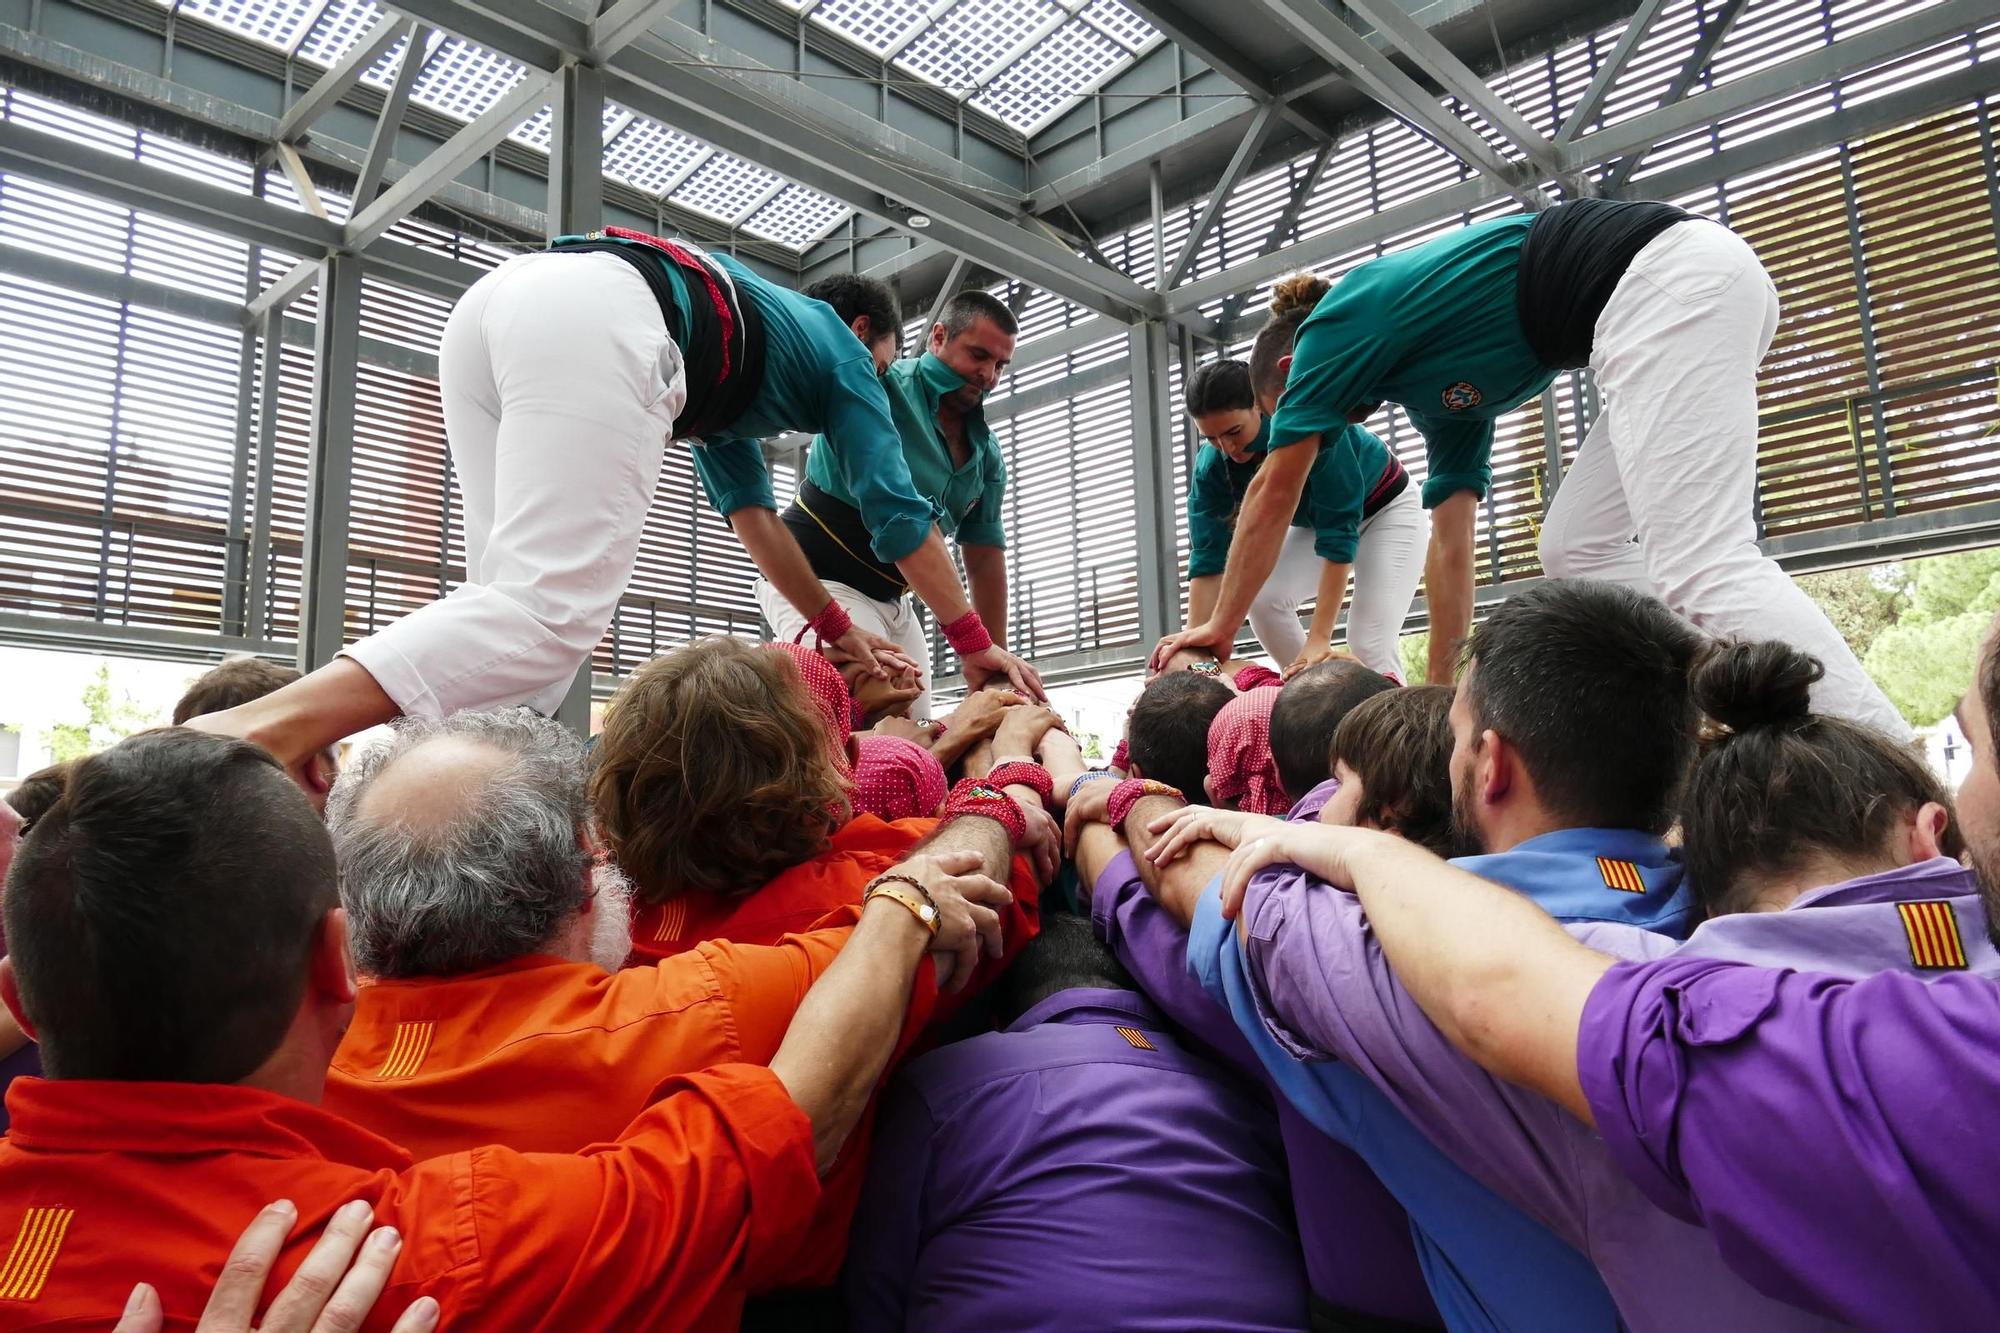 La Colla Castellera de Figueres aixeca el primer pilar de 5 per sota de la seva història a la Diada de Sant Pere